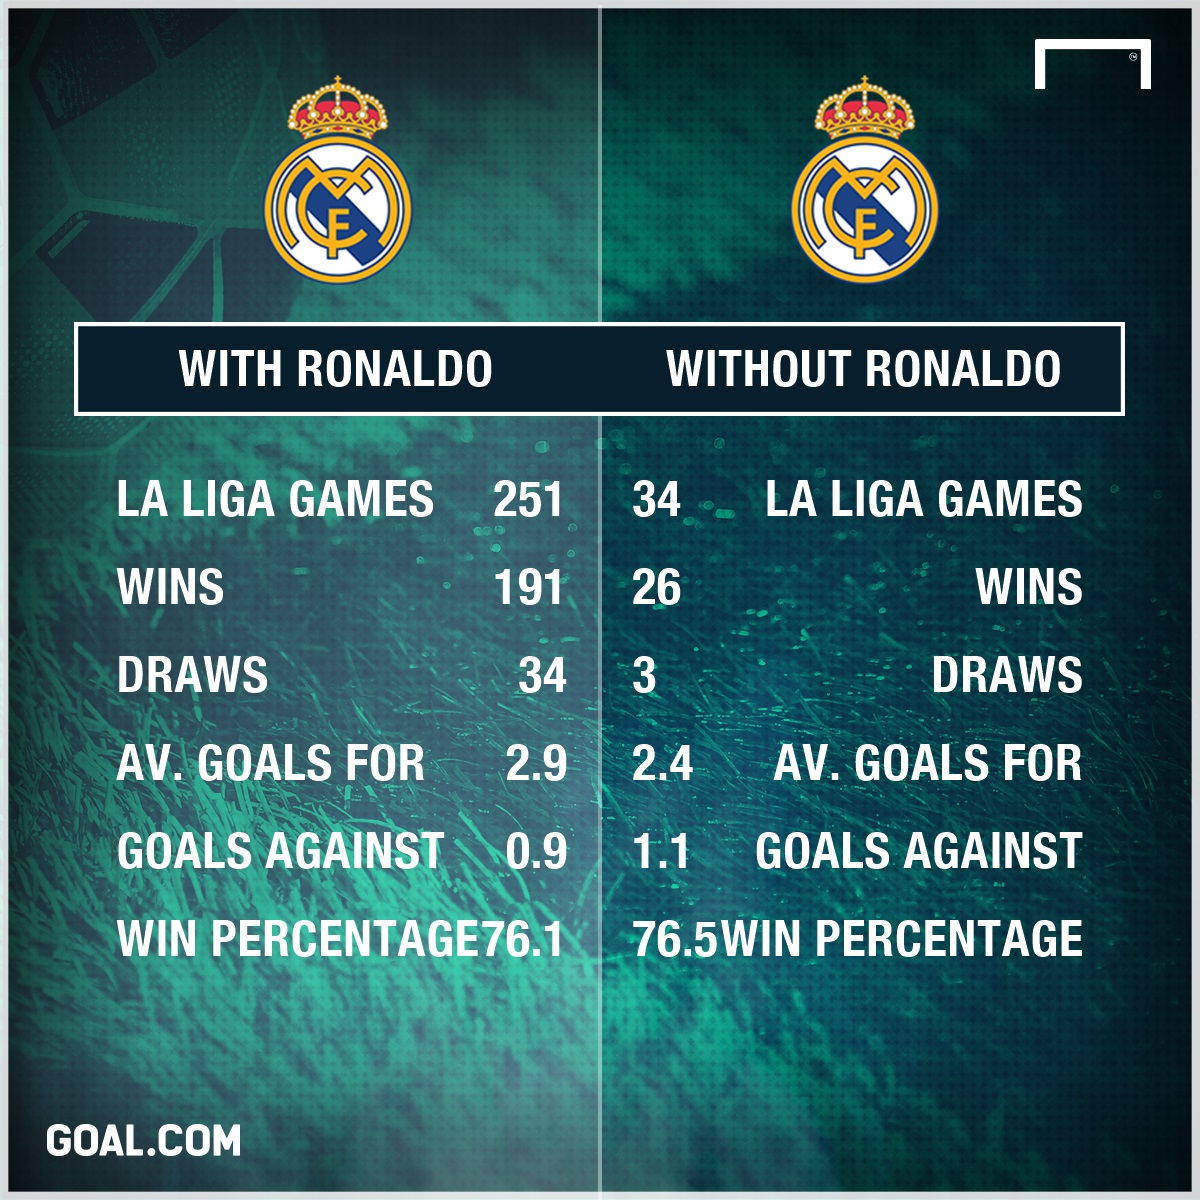 FUTEBOL: Ronaldo visa recorde de golos do Real Madrid infographic